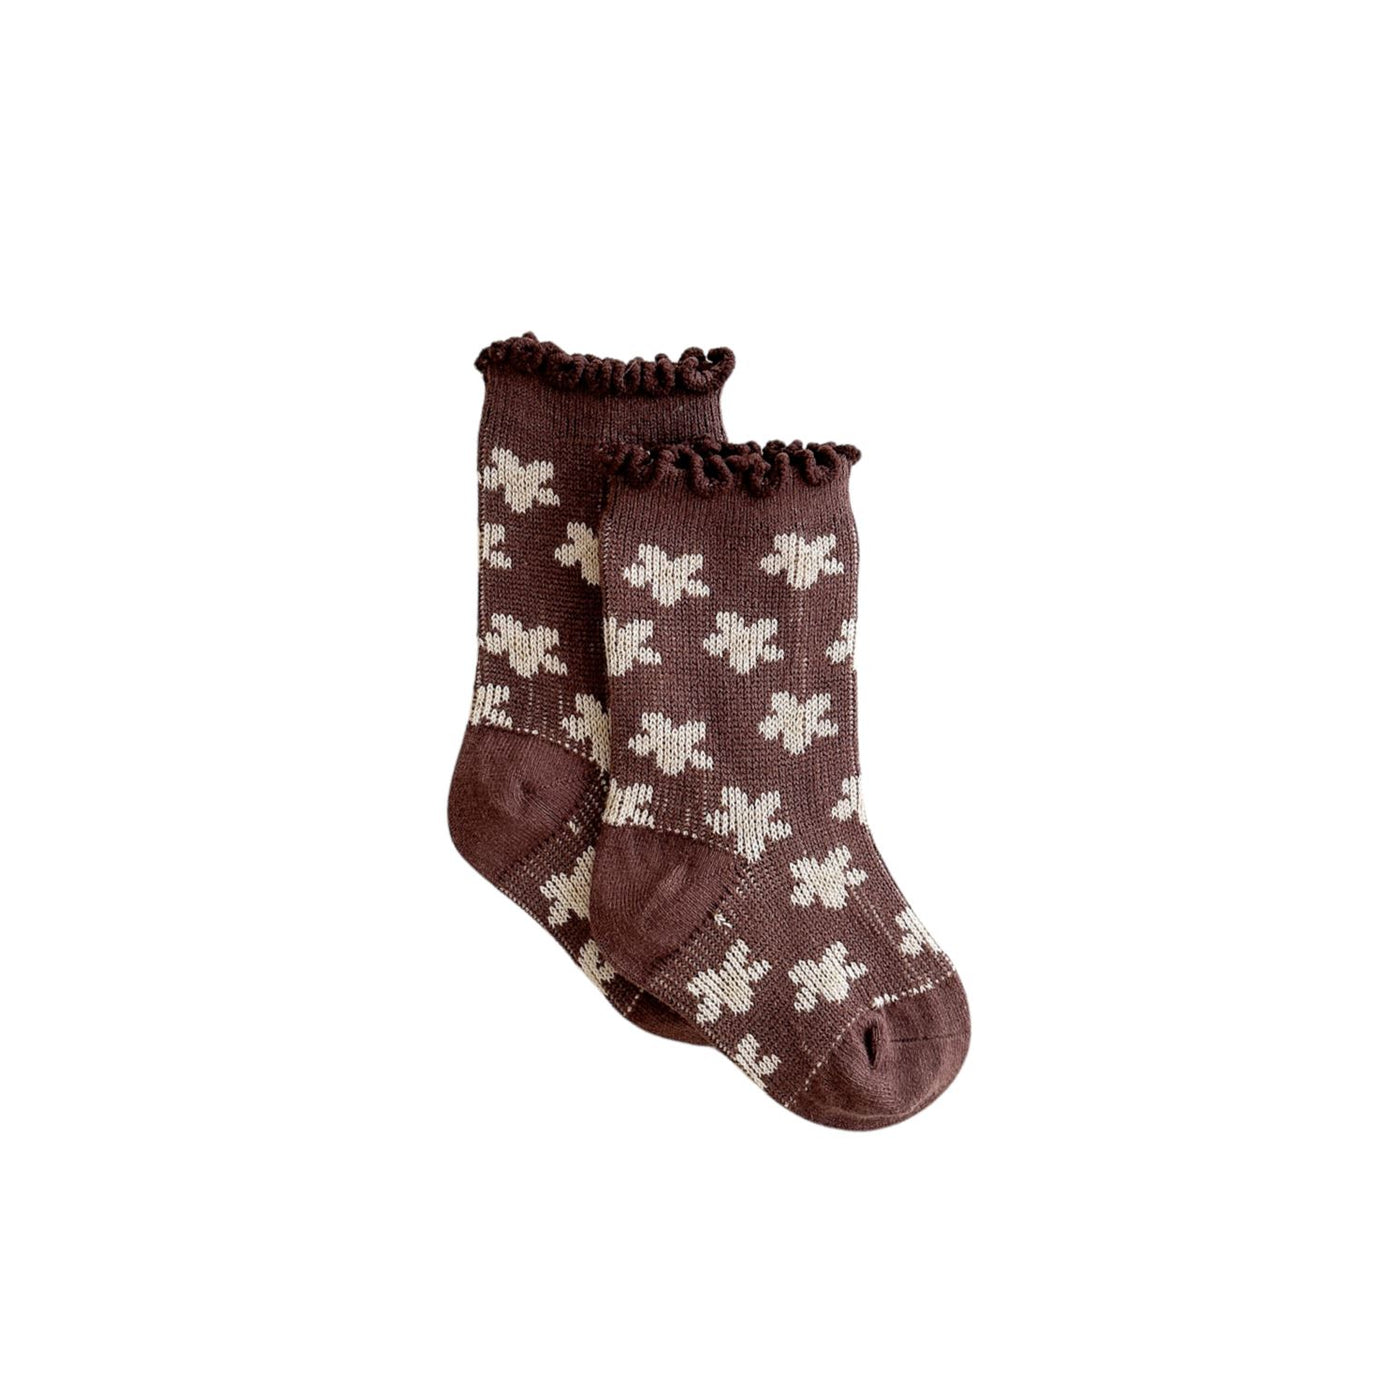 Ziggy Lou - Socks Cosmo/Chocolate Socks Ziggy Lou 